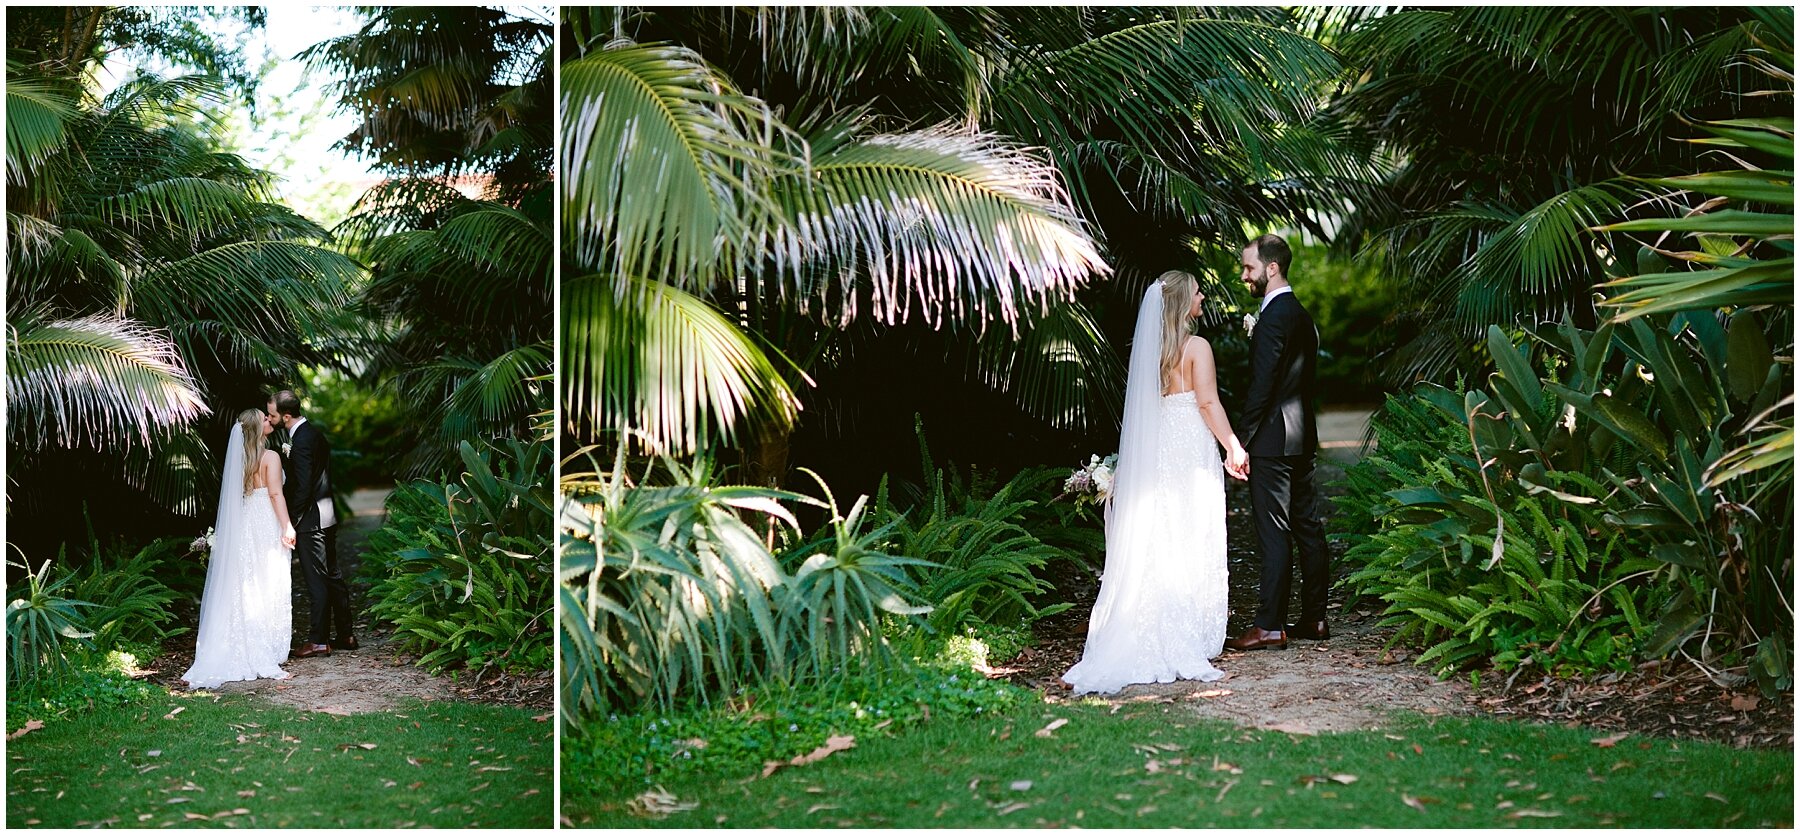 Tropical Garden Wedding | Perth Photography